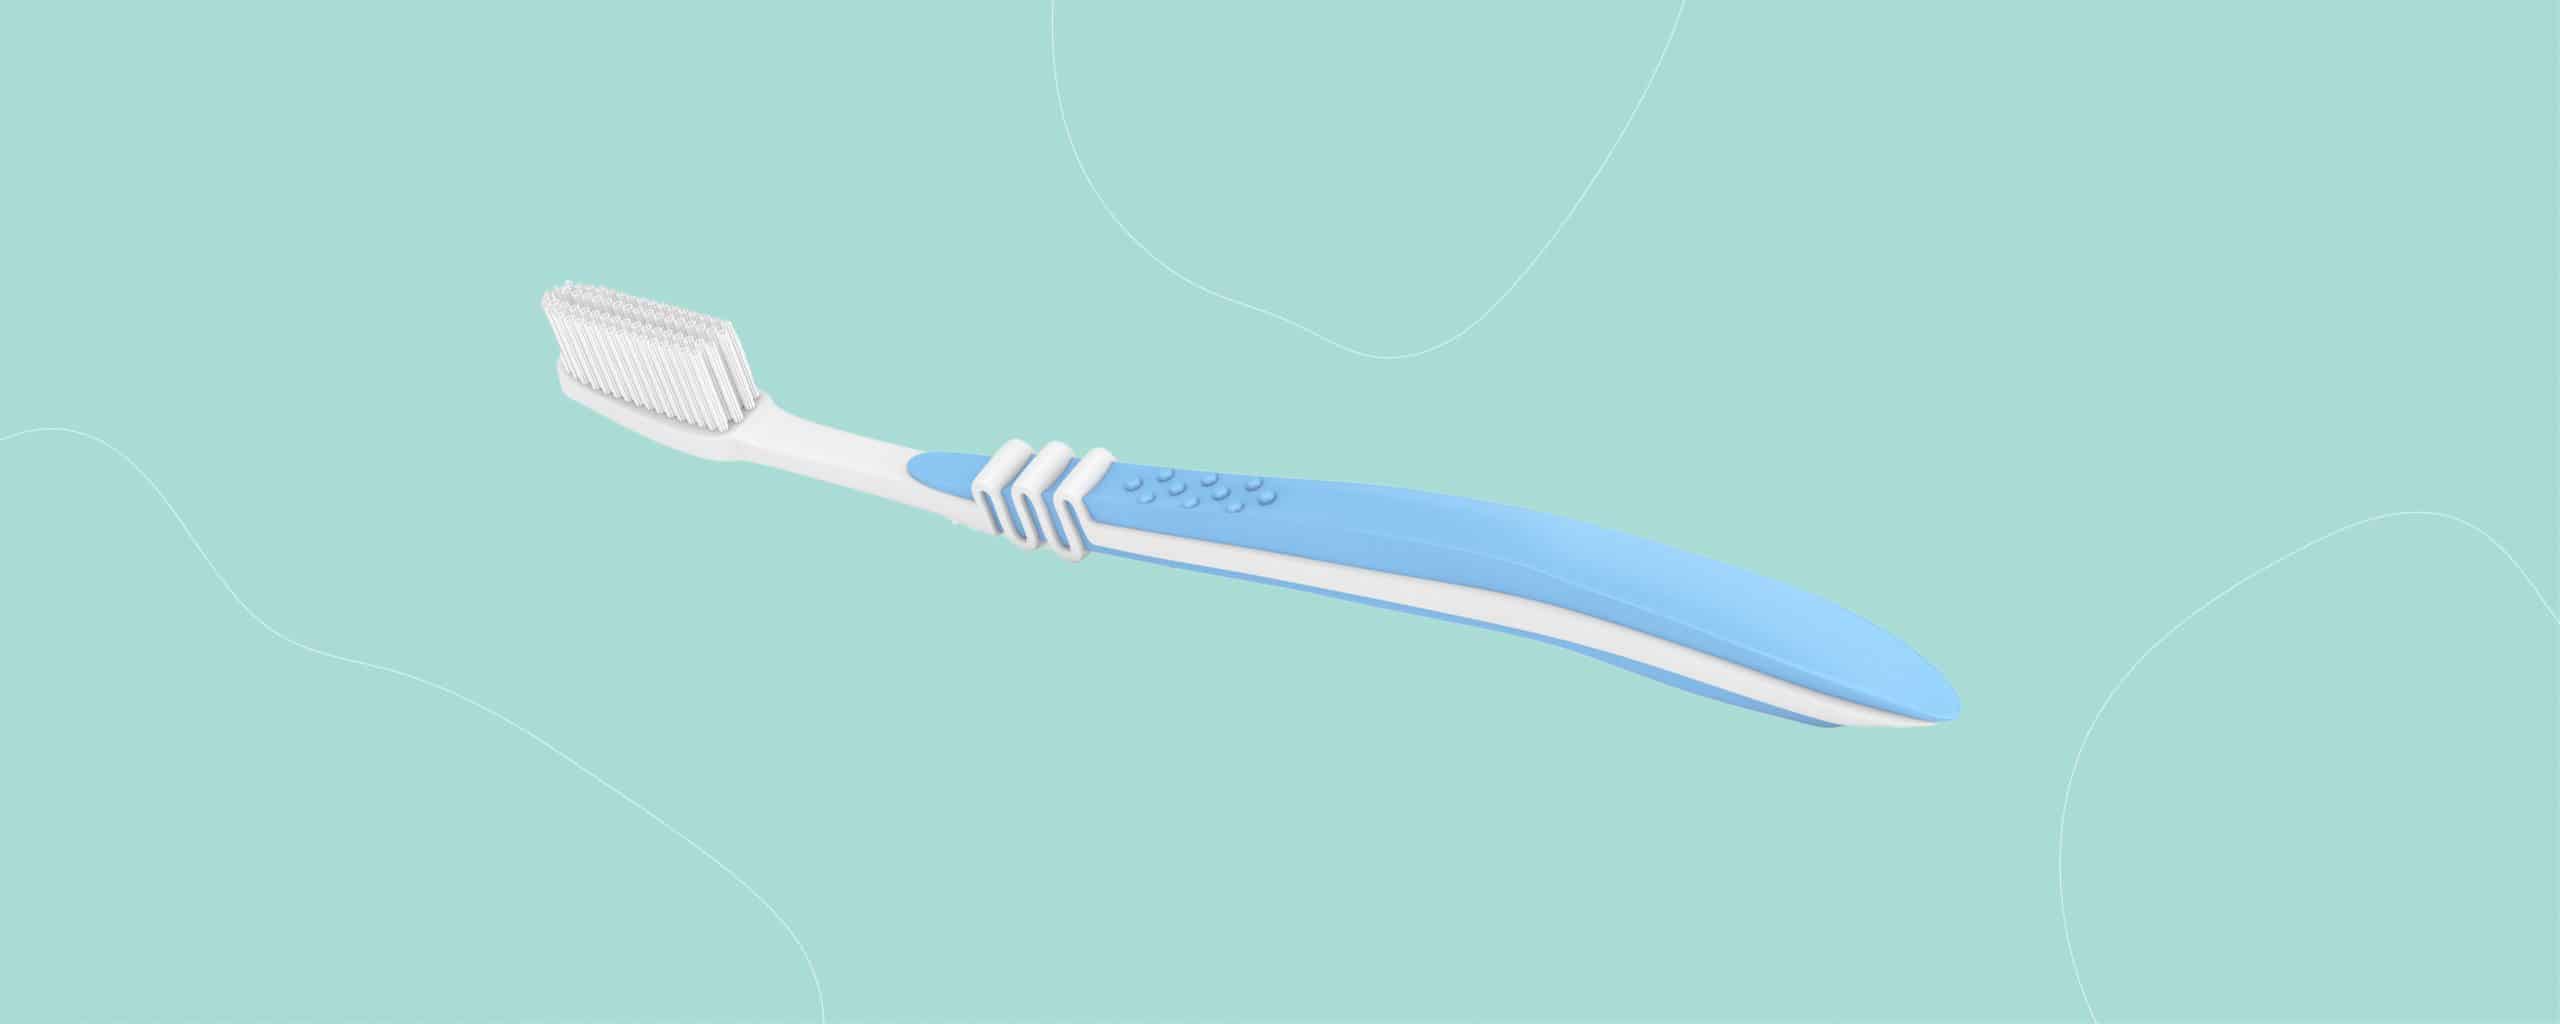 Come lavarsi i denti con lo spazzolino manuale? Il video della nostra igienista Sara Bianco